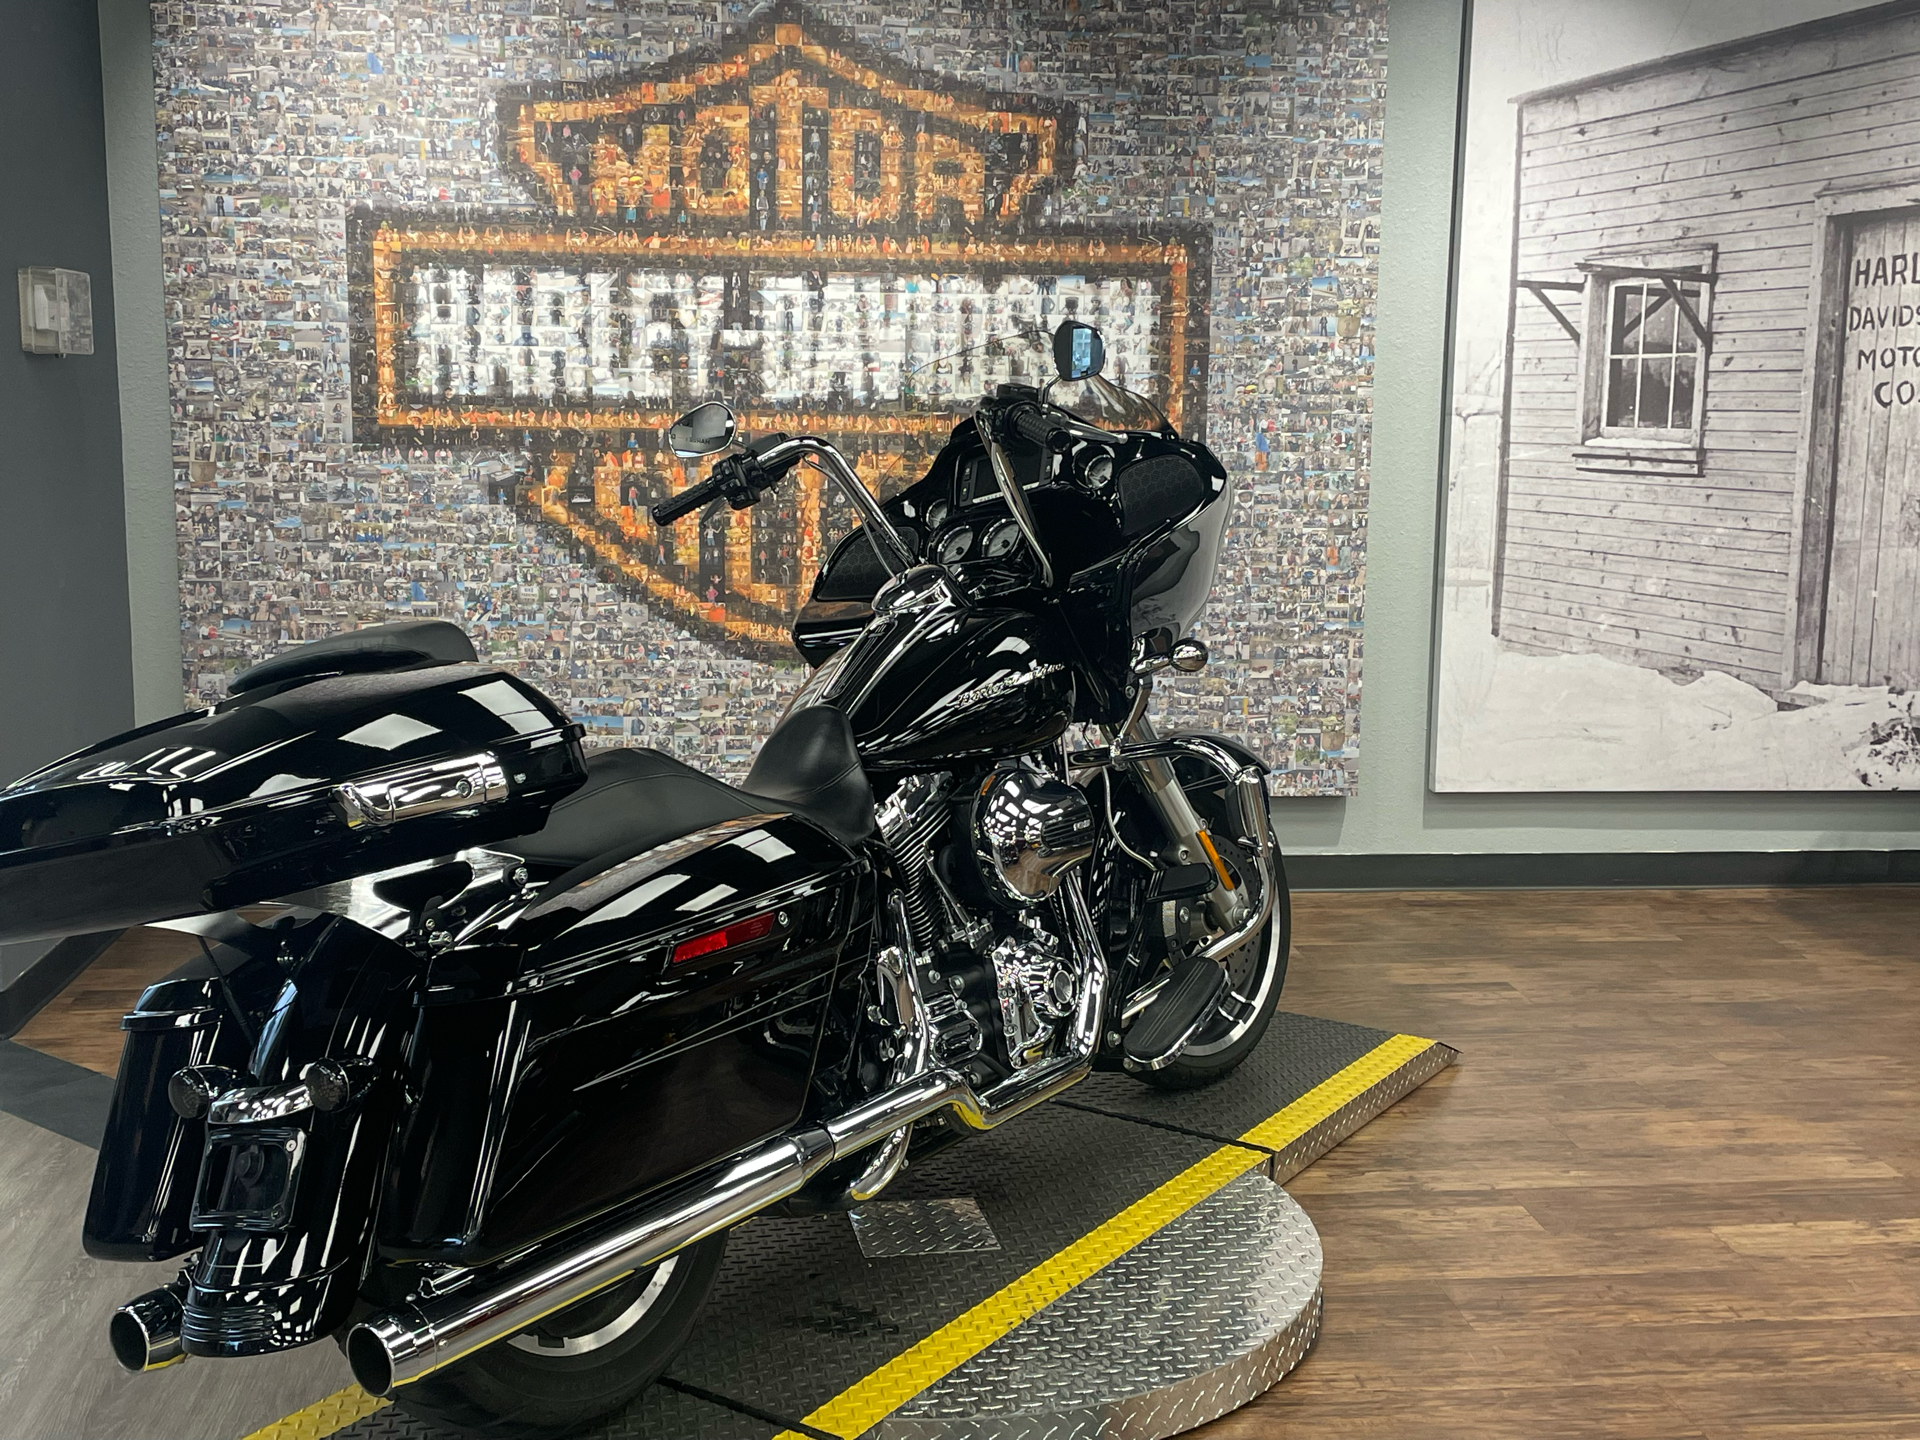 2016 Harley-Davidson FLTRXS in Greeley, Colorado - Photo 6